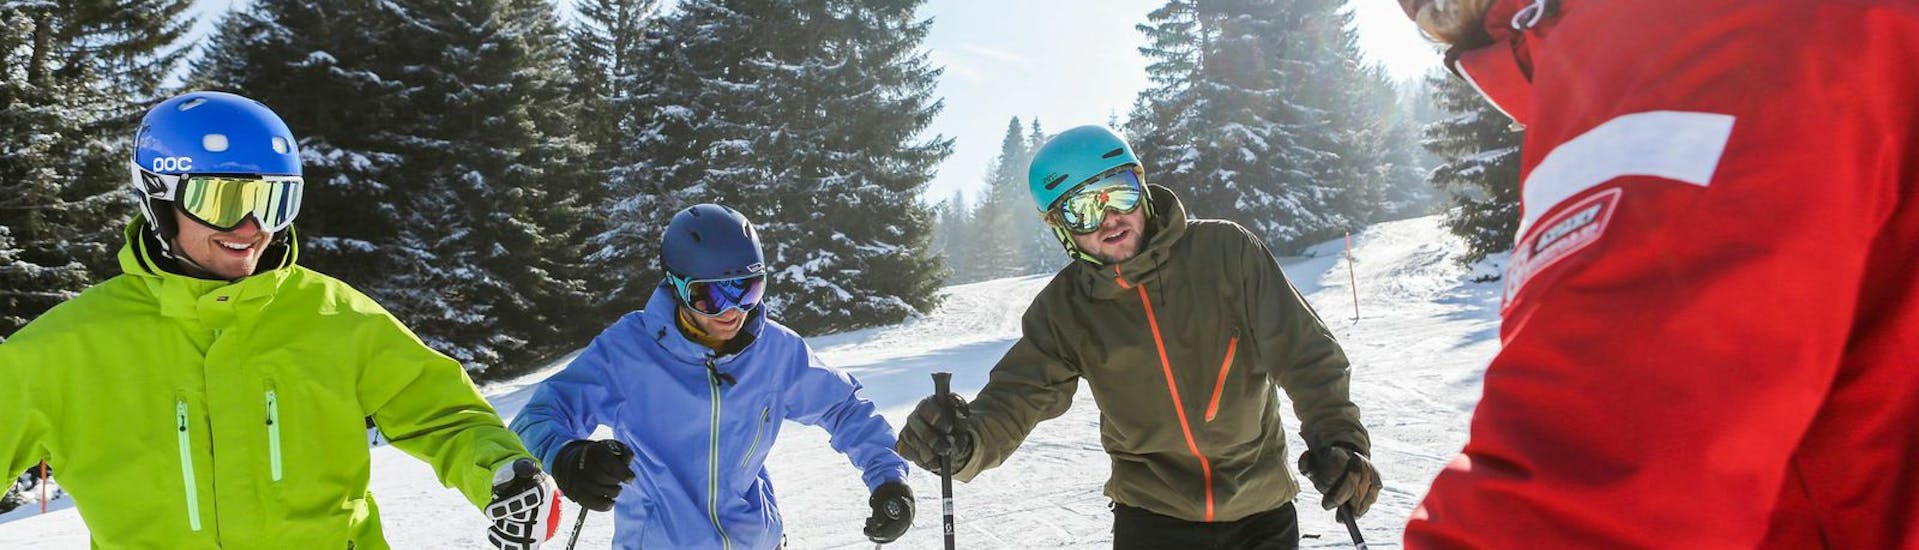 Clases de esquí para adultos a partir de 16 años con experiencia.